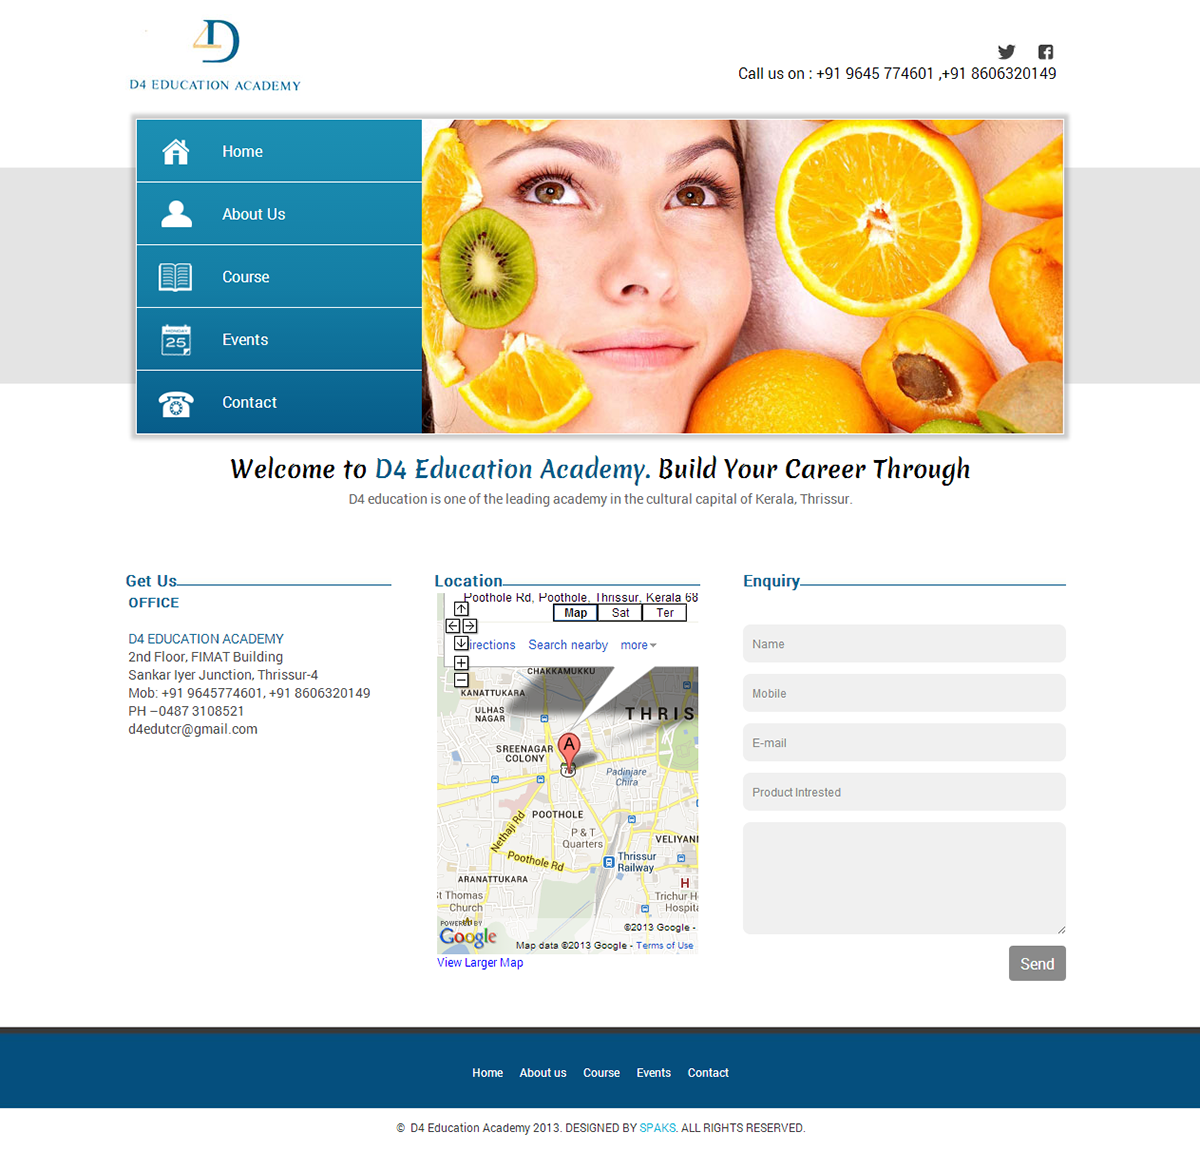 Behance matizmo spaks content concept D4 Education academy thrissur kerala Web design site